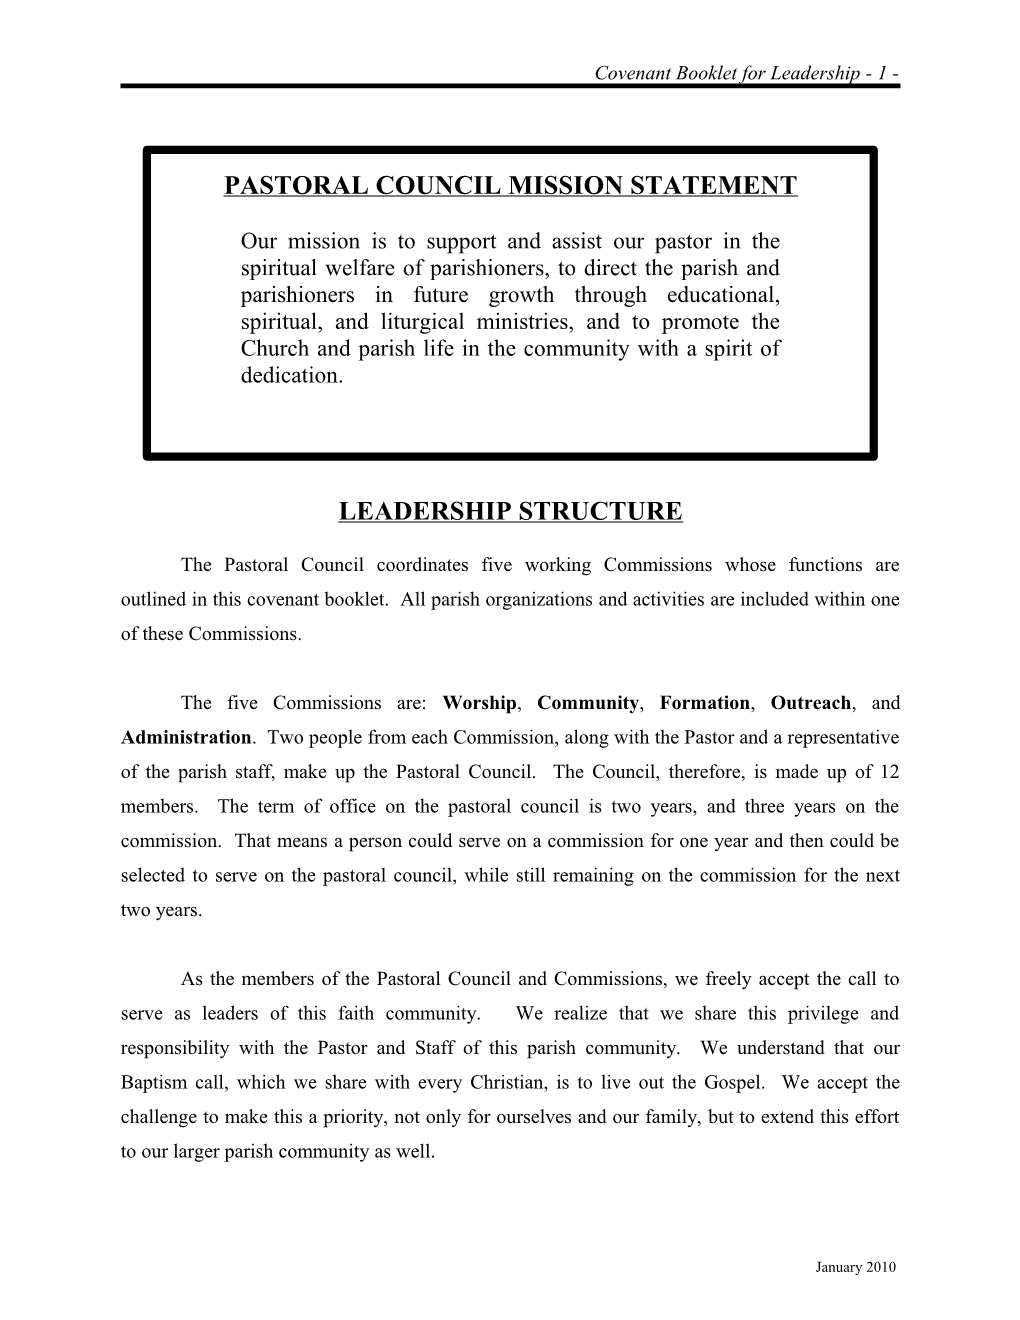 Pastoral Council Mission Statement